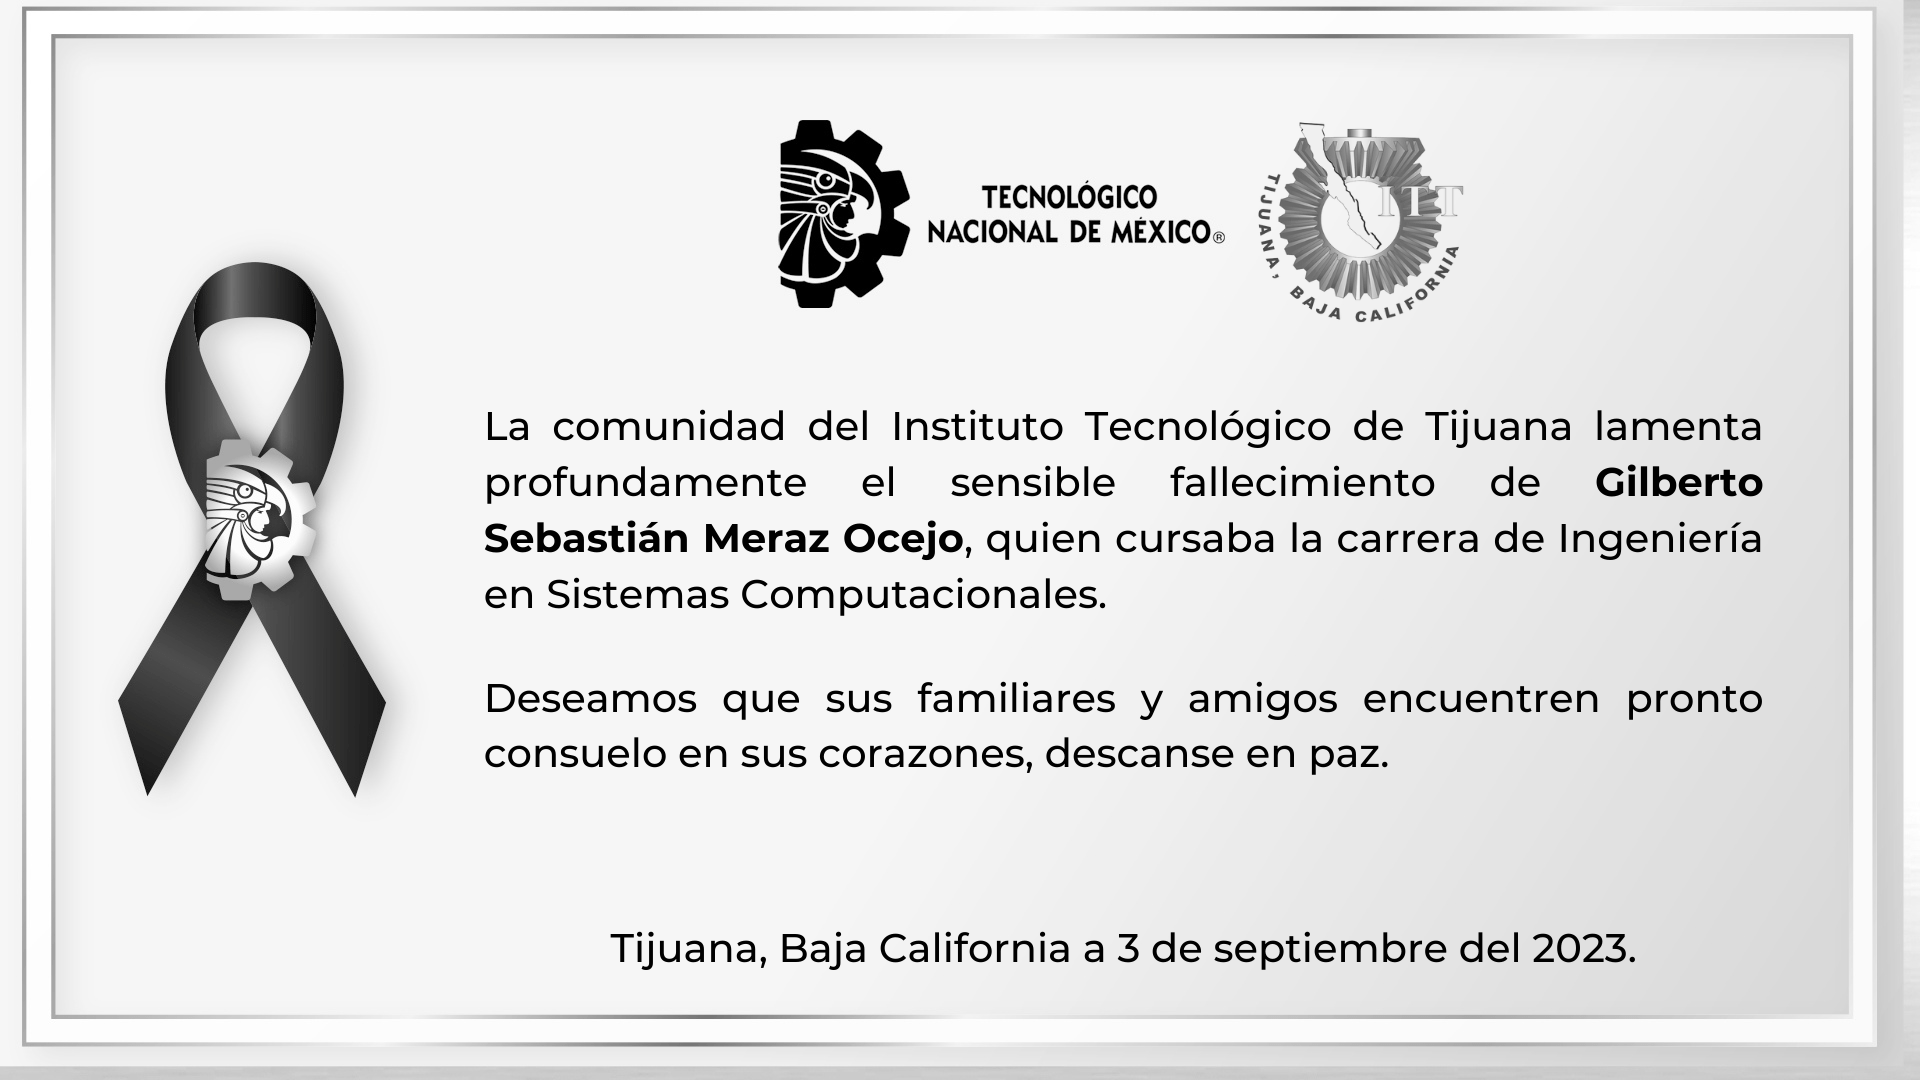 La comunidad del Instituto Tecnológico de Tijuana lamenta profundamente el sensible fallecimiento de Gilberto Sebastián Meraz Ocejo